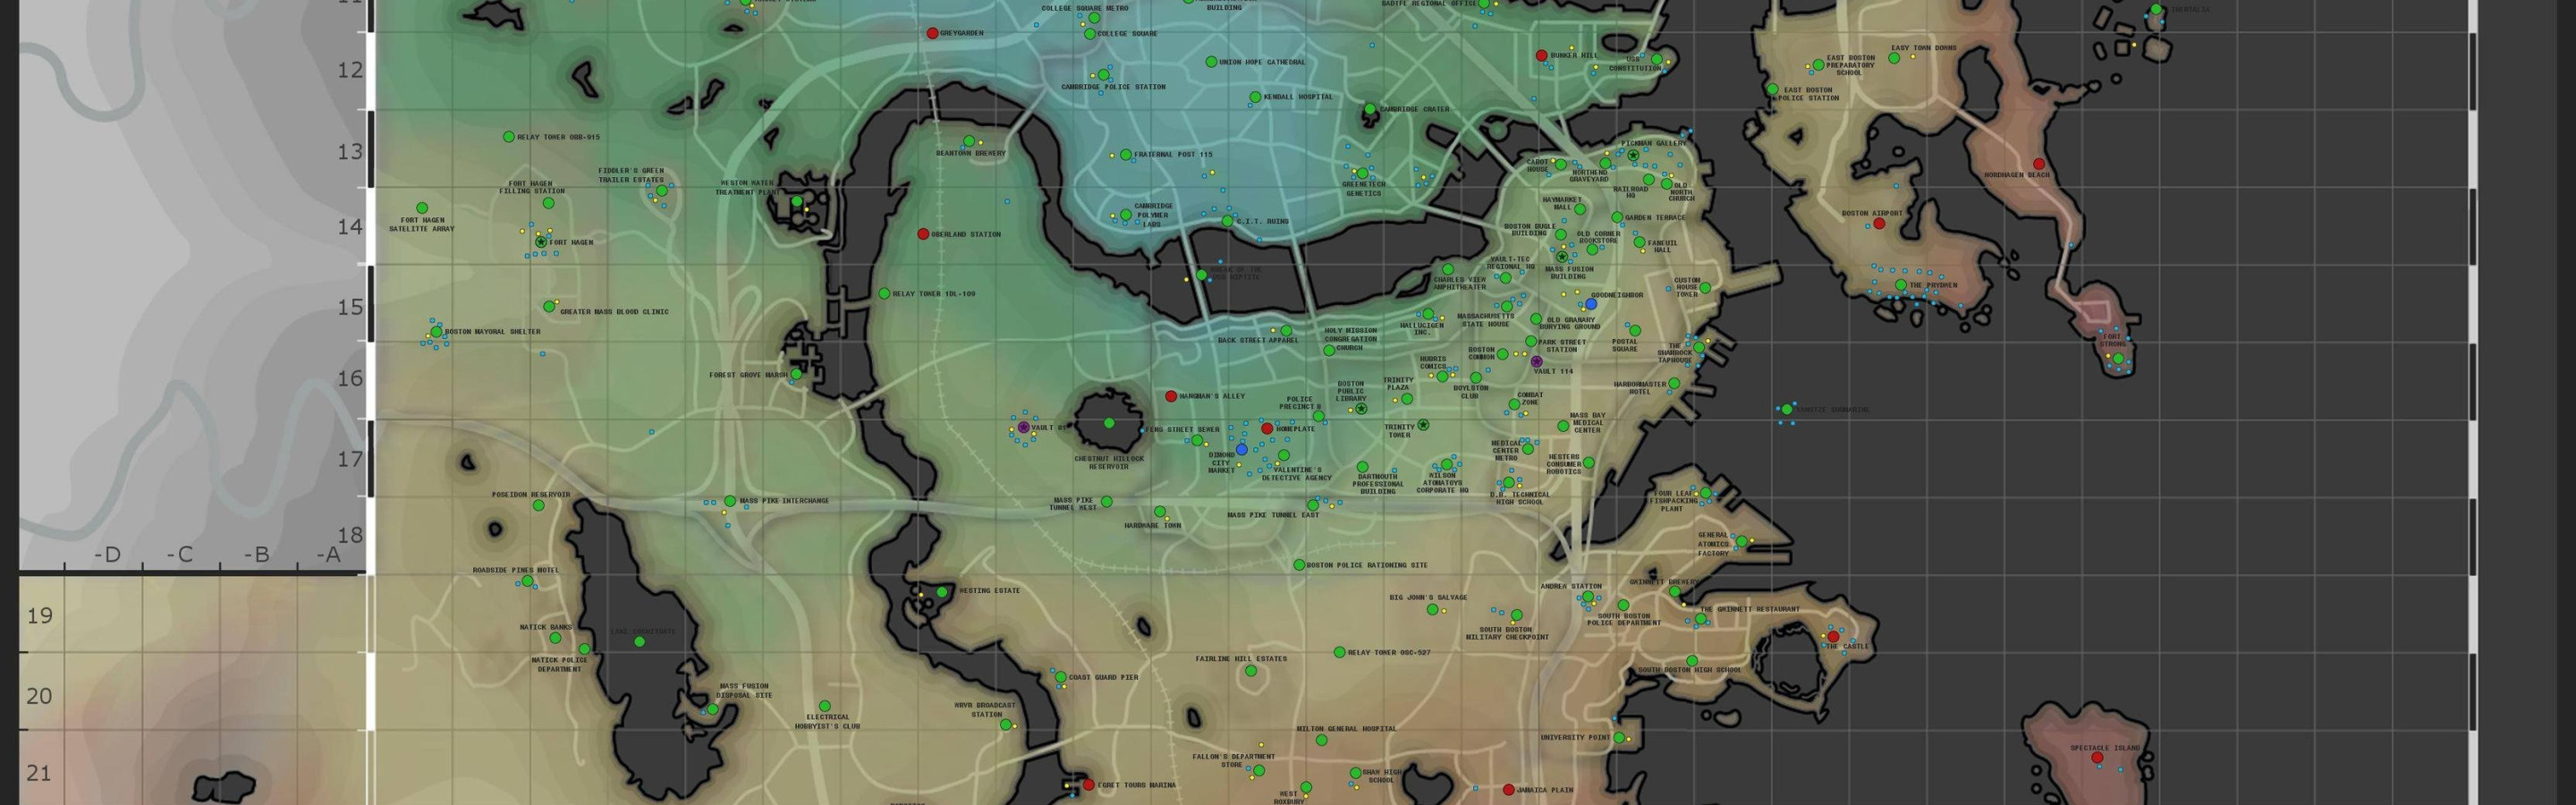 вся карта fallout 4 онлайн фото 92